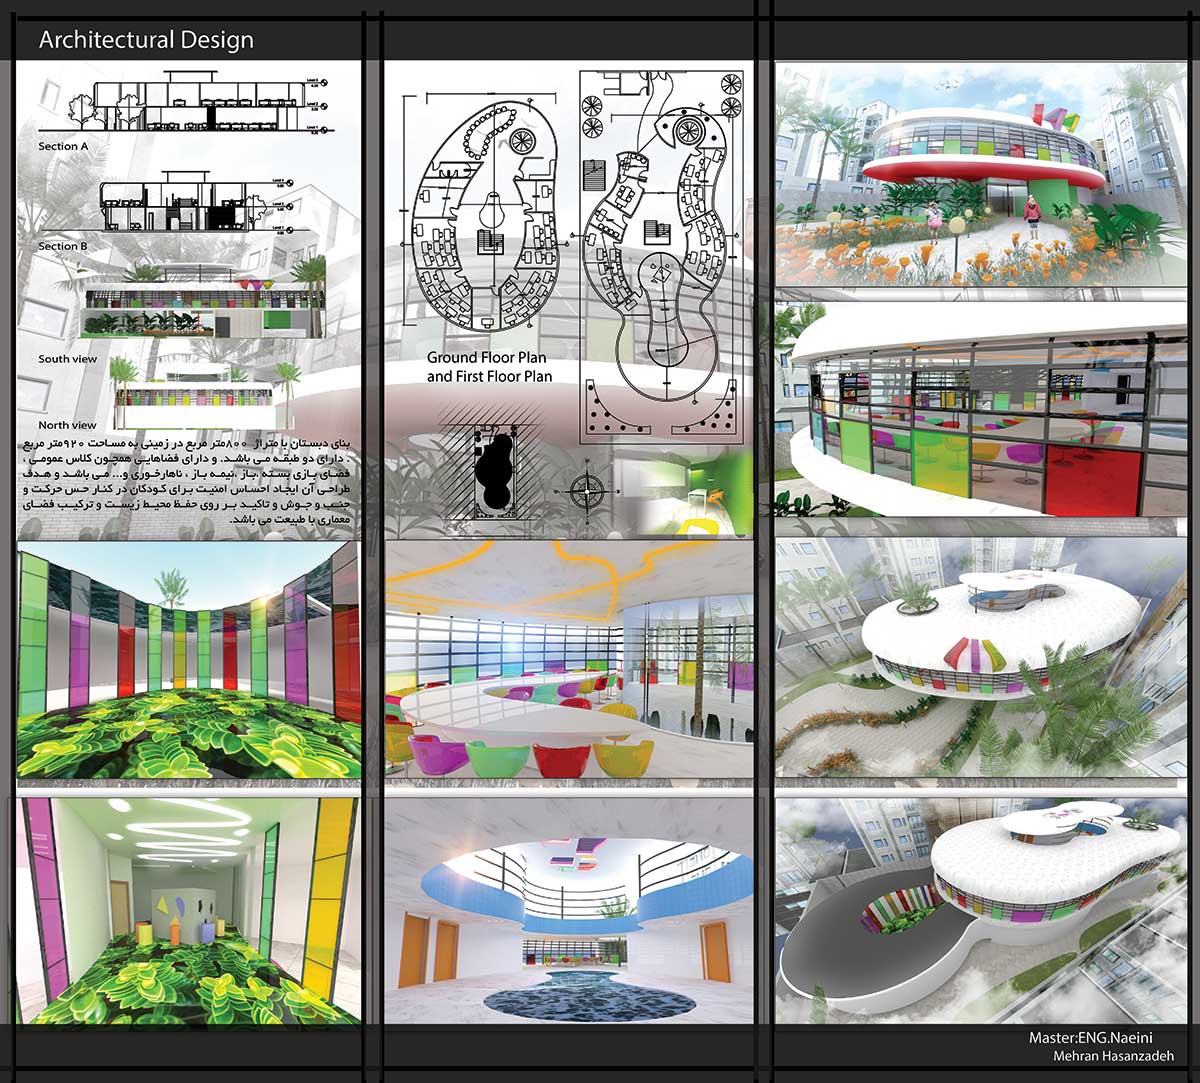 دانلود پروژه دبستان طرح آموزشی معماری داخلی - دانلود پروژه دبستان طرح آموزشی معماری داخلی به همراه نقشه ، سه بعدی و جزئیات